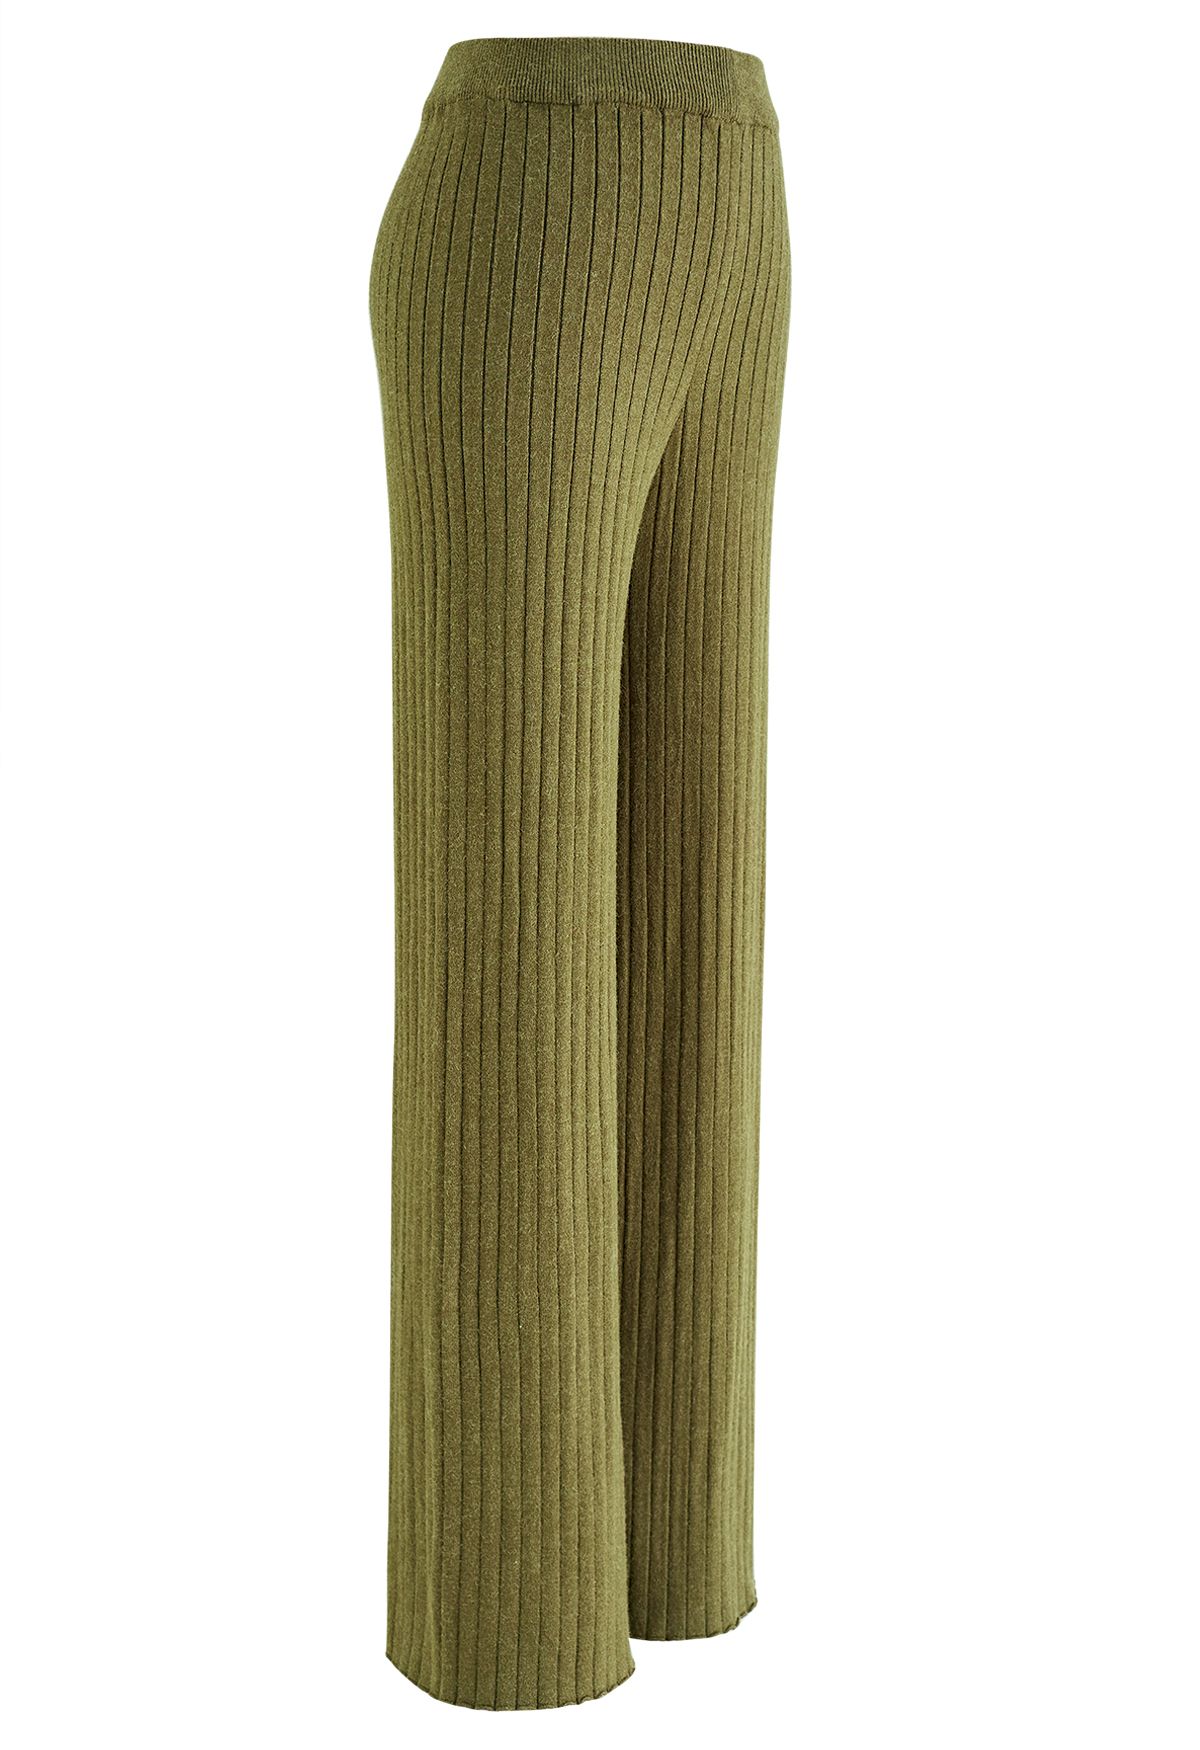 Pantalones de punto de pierna recta acanalados en verde musgo